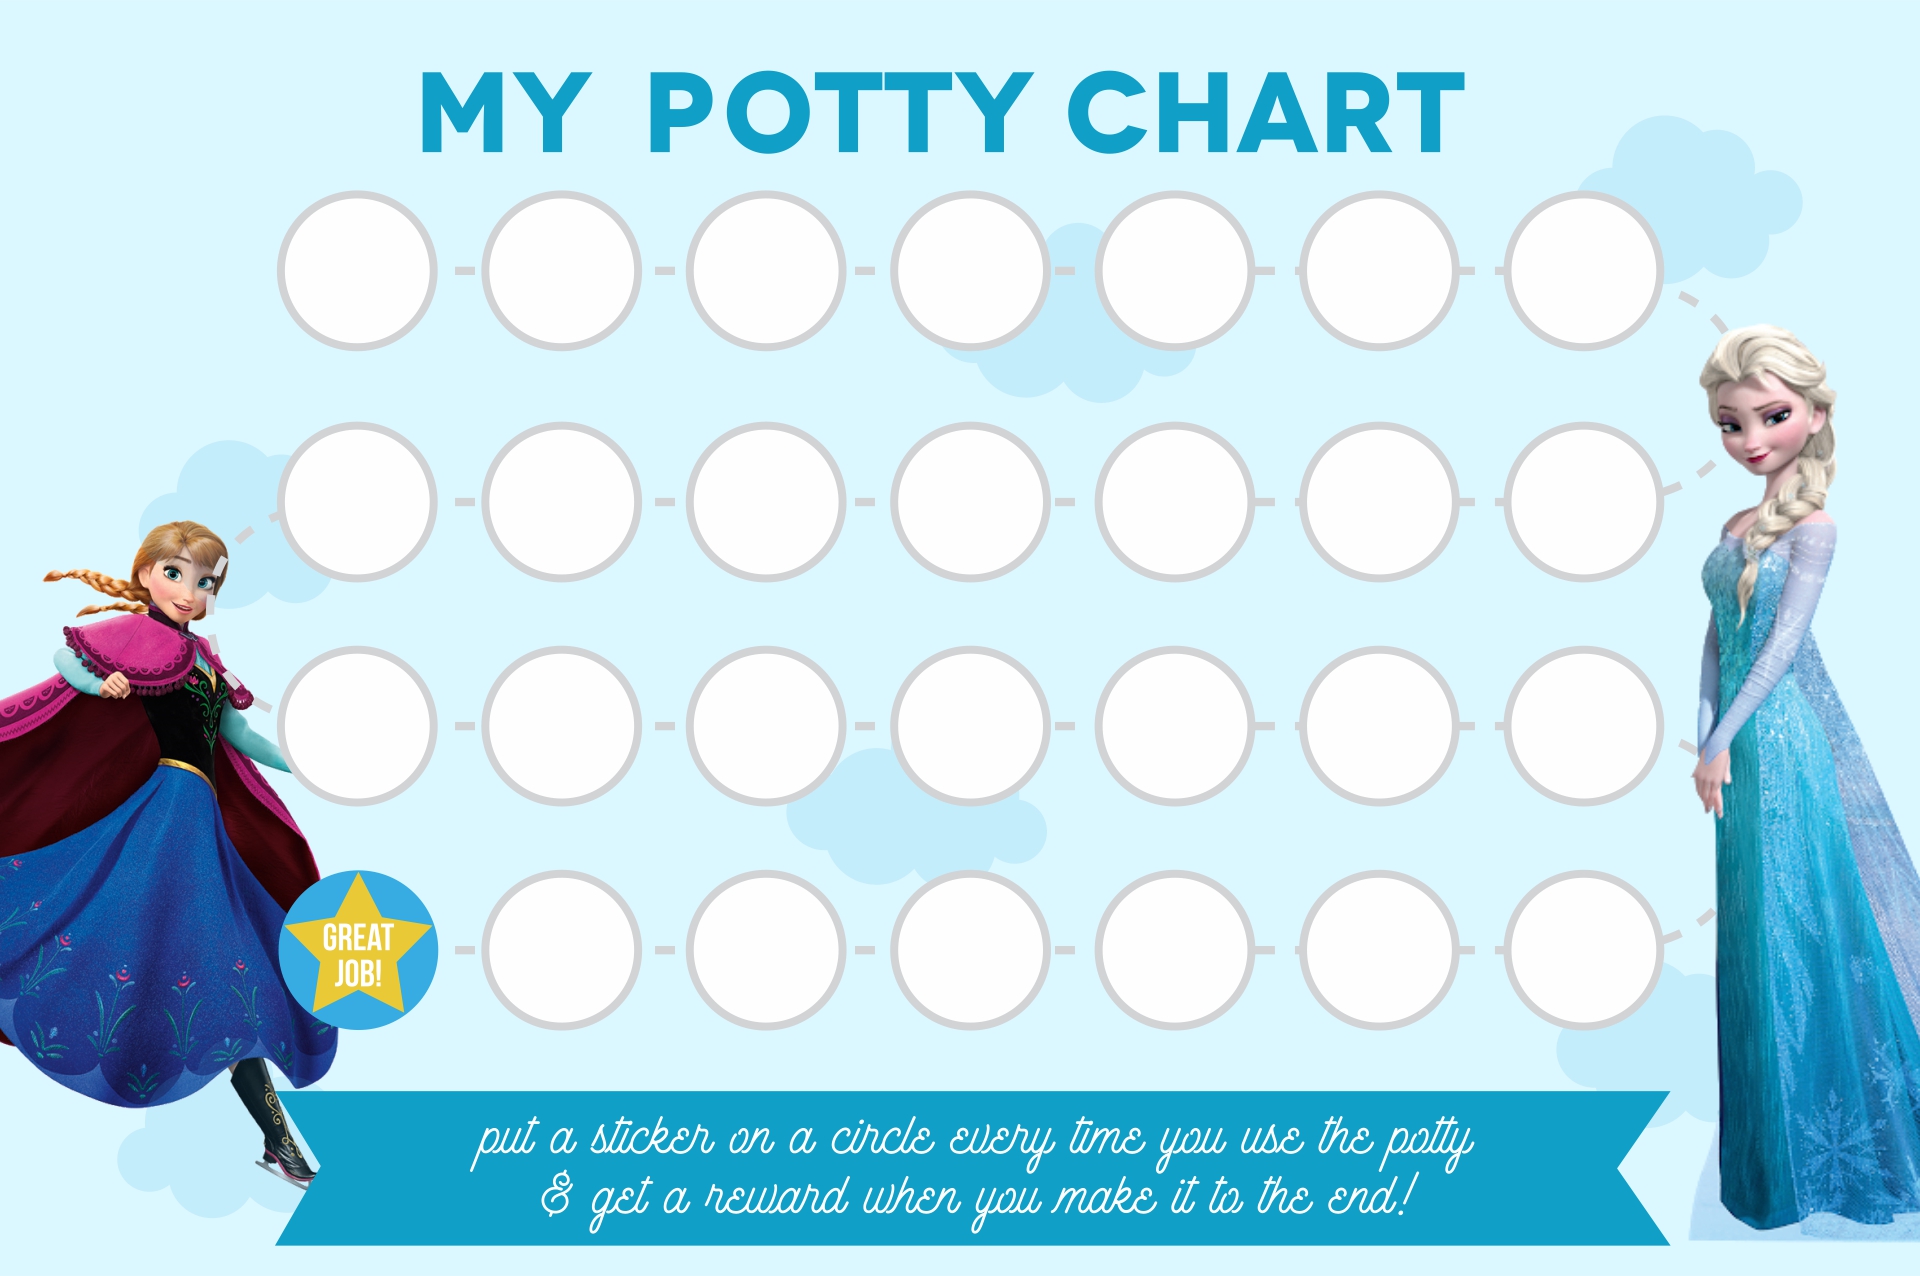 Printable Potty Charts Free